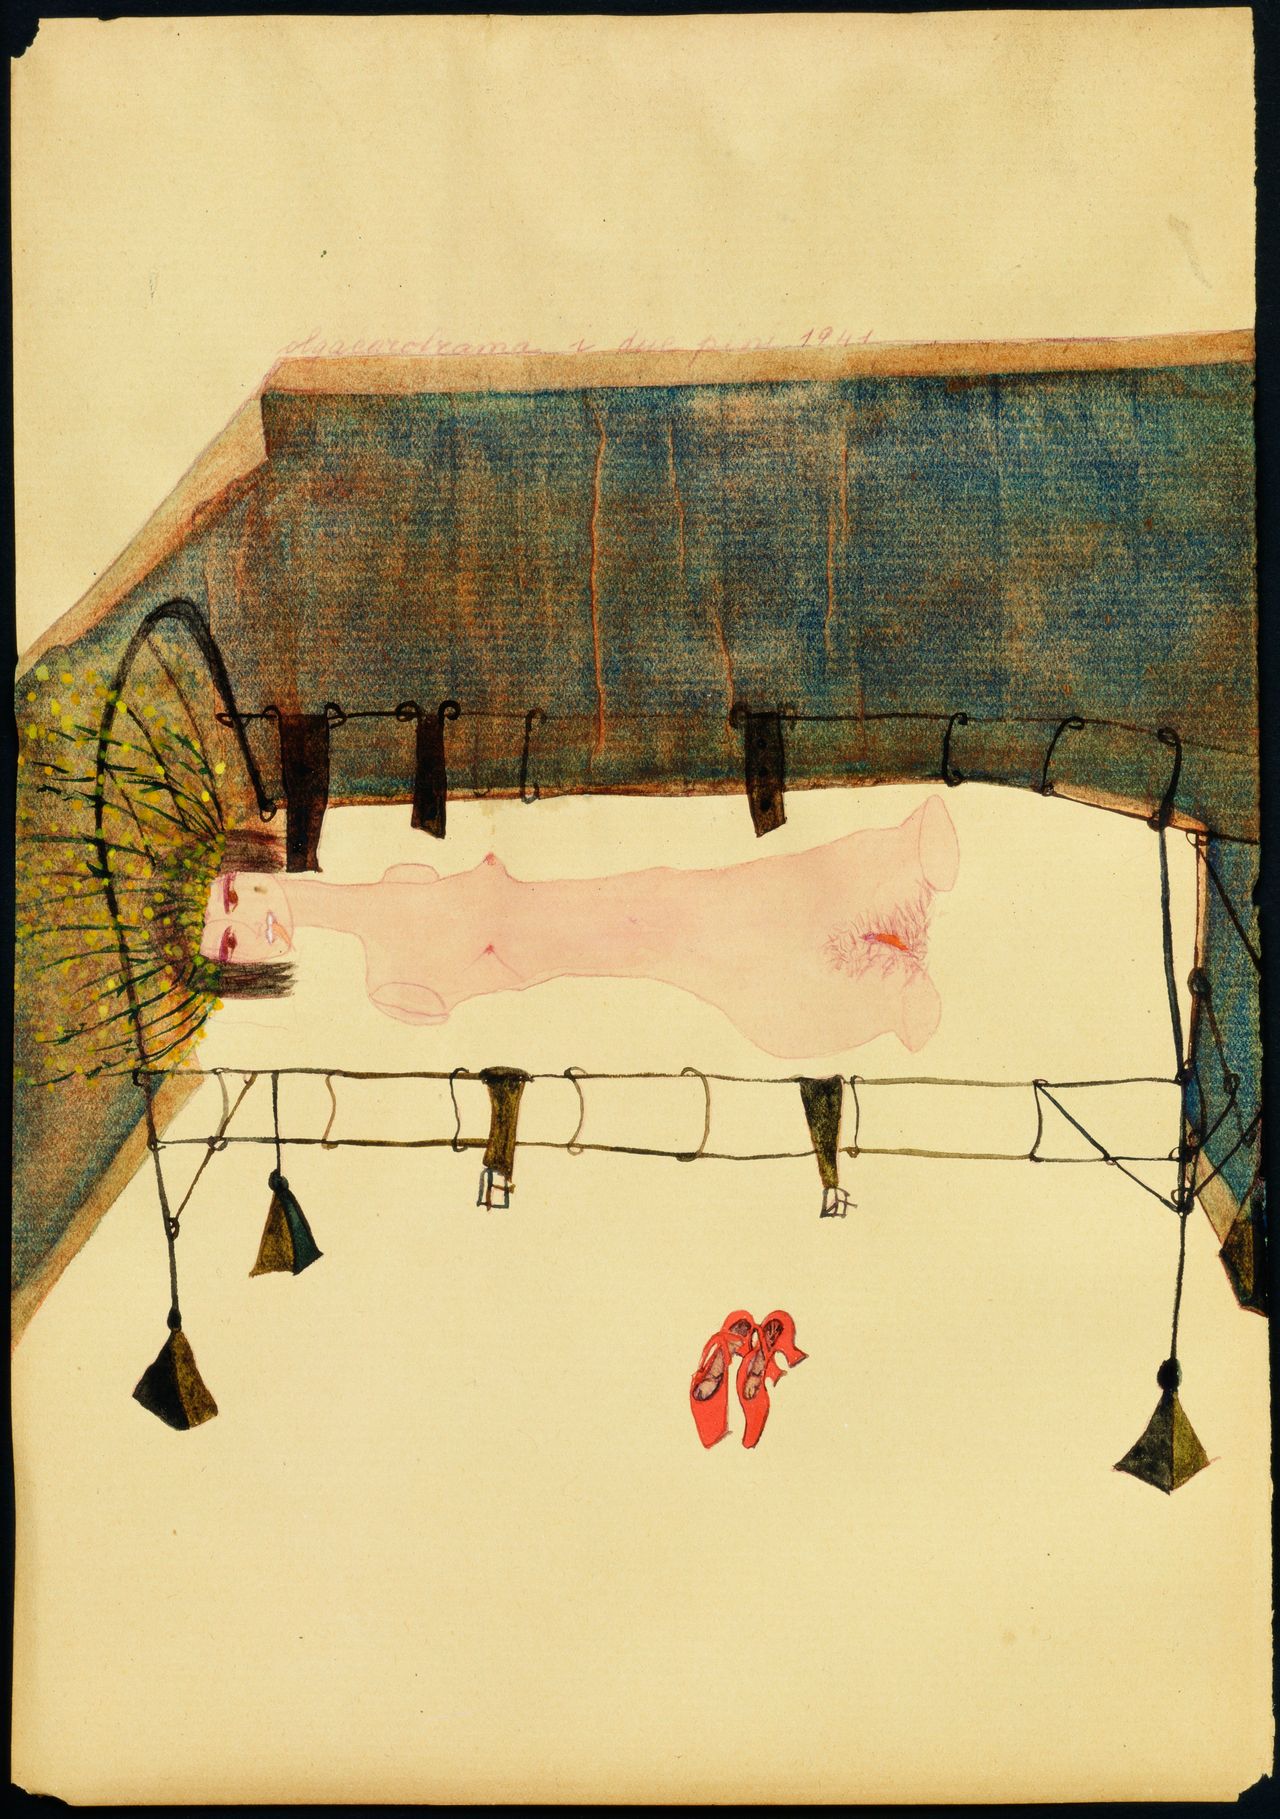 Carol Rama, "Appassionata [Passionate]," 1941, watercolor on paper 